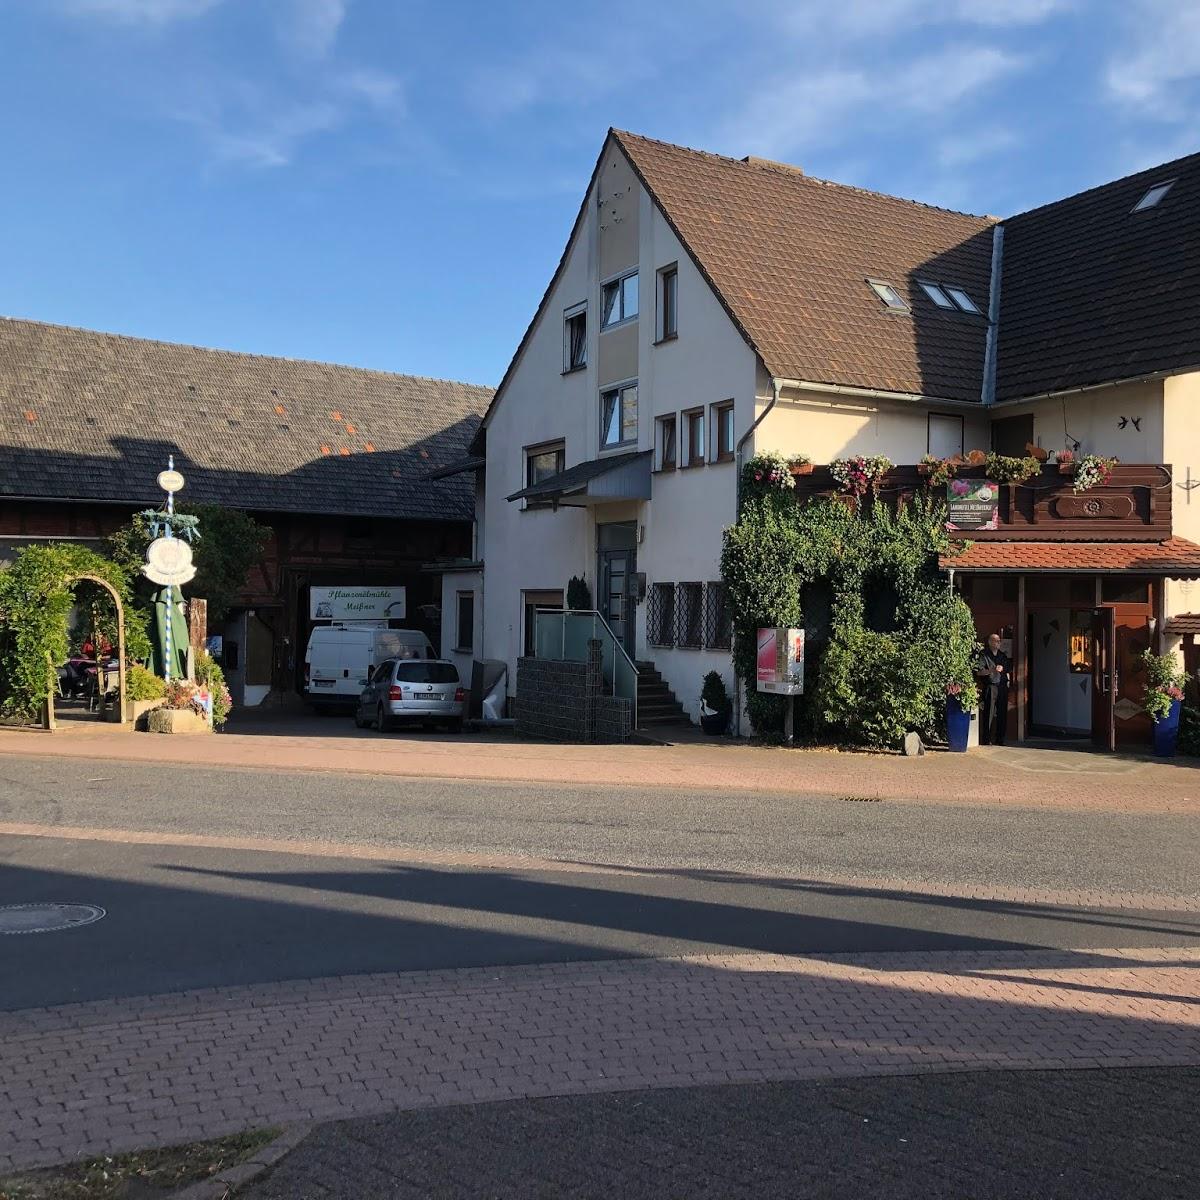 Restaurant "Landhotel hof" in Meißner